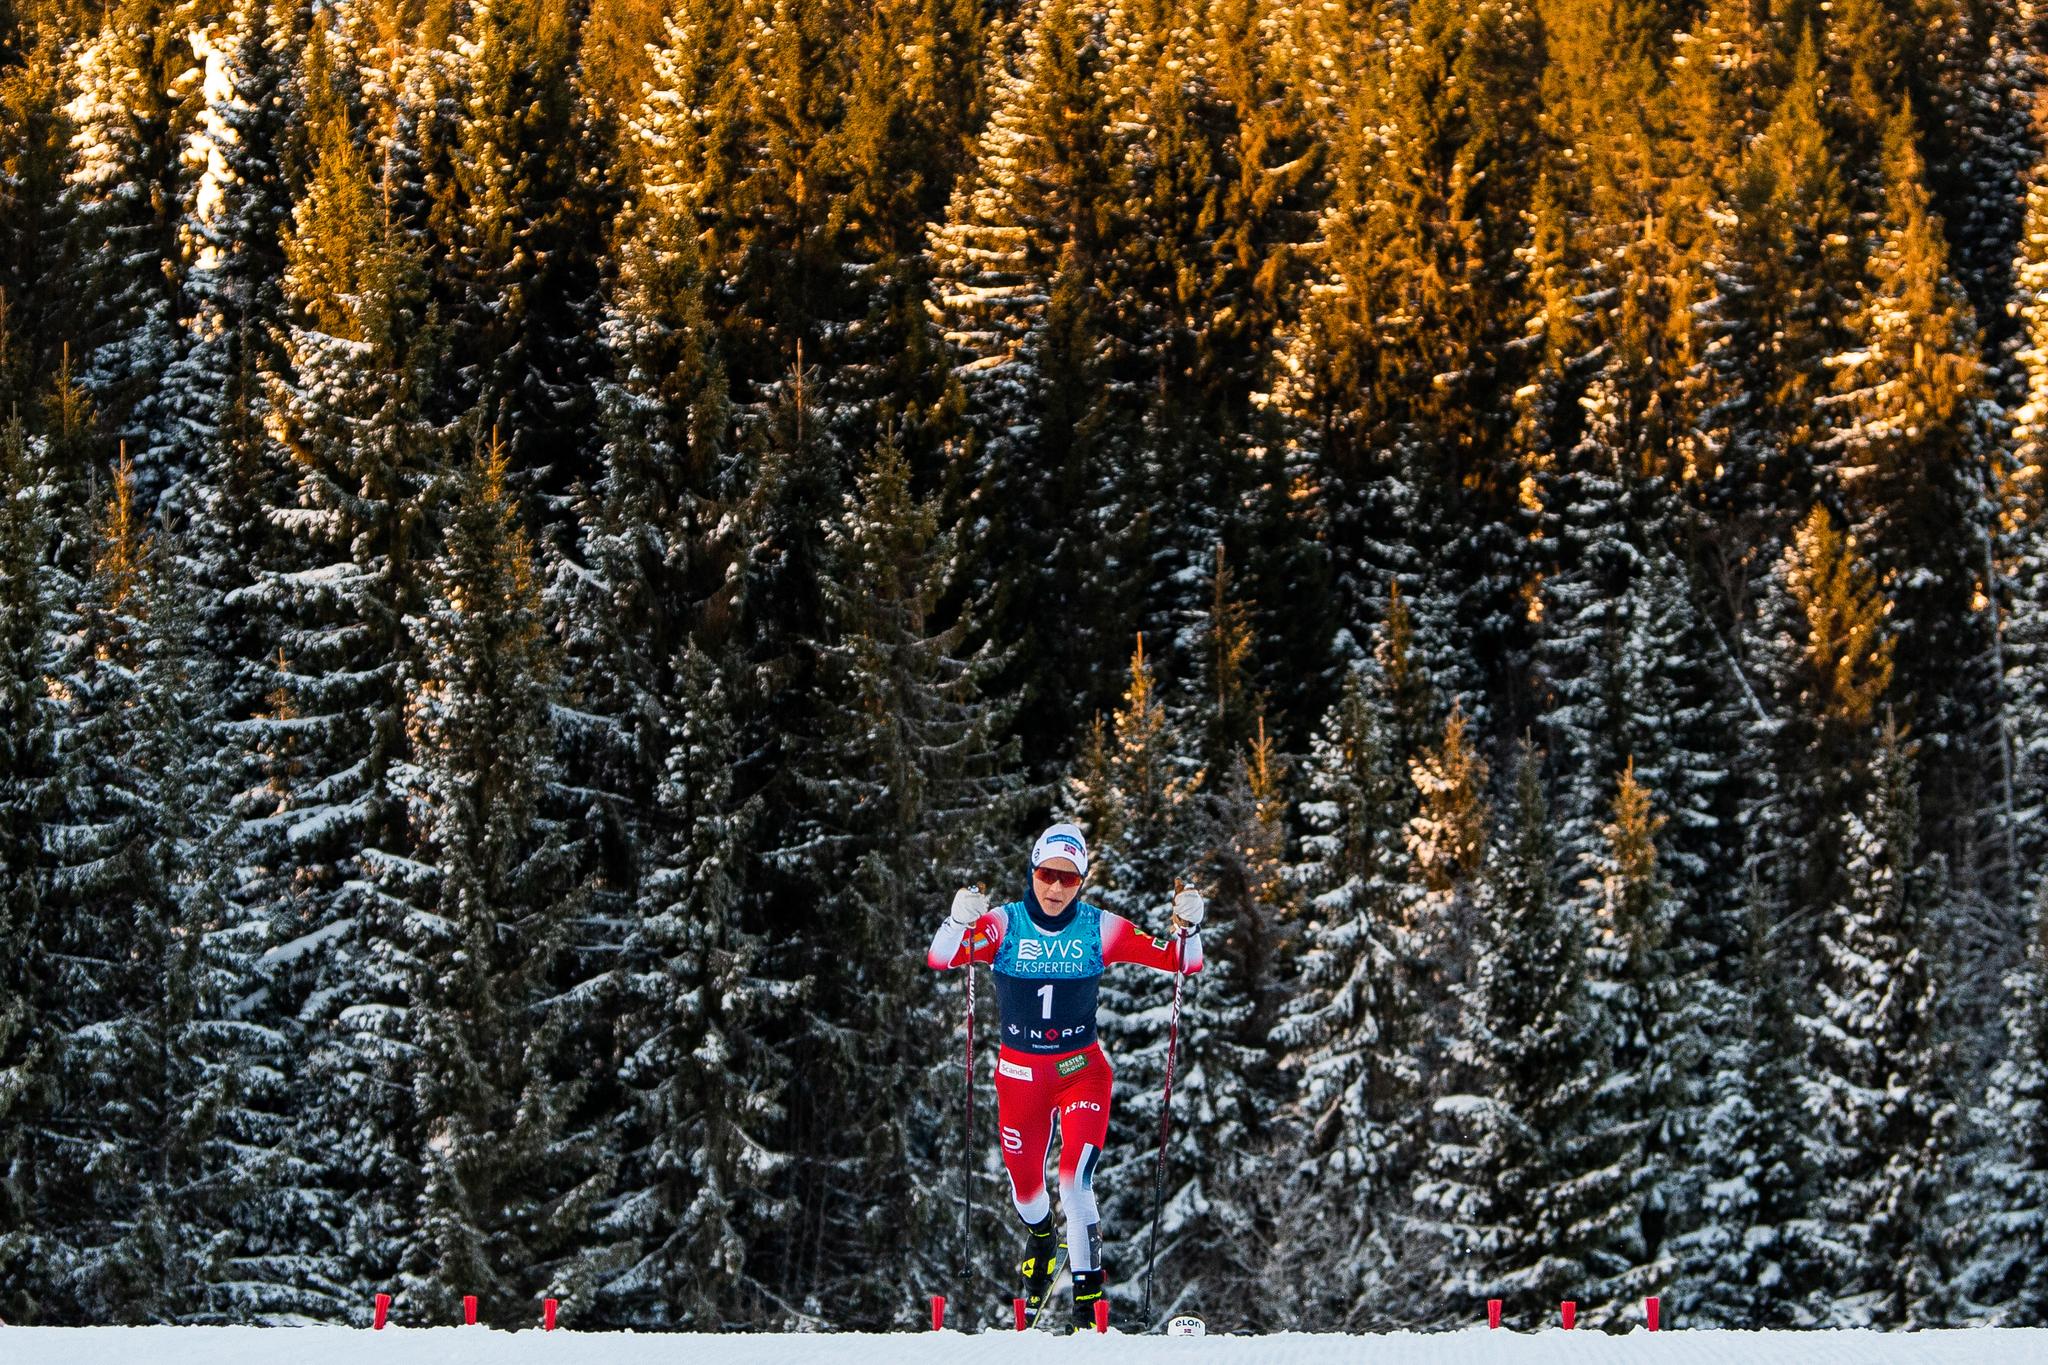 Løperne så Therese Johaug på start. Hun stakk med en gang på 15 km skiathlon i Granåsen. Resten av løpet gikk hun alene i front. 